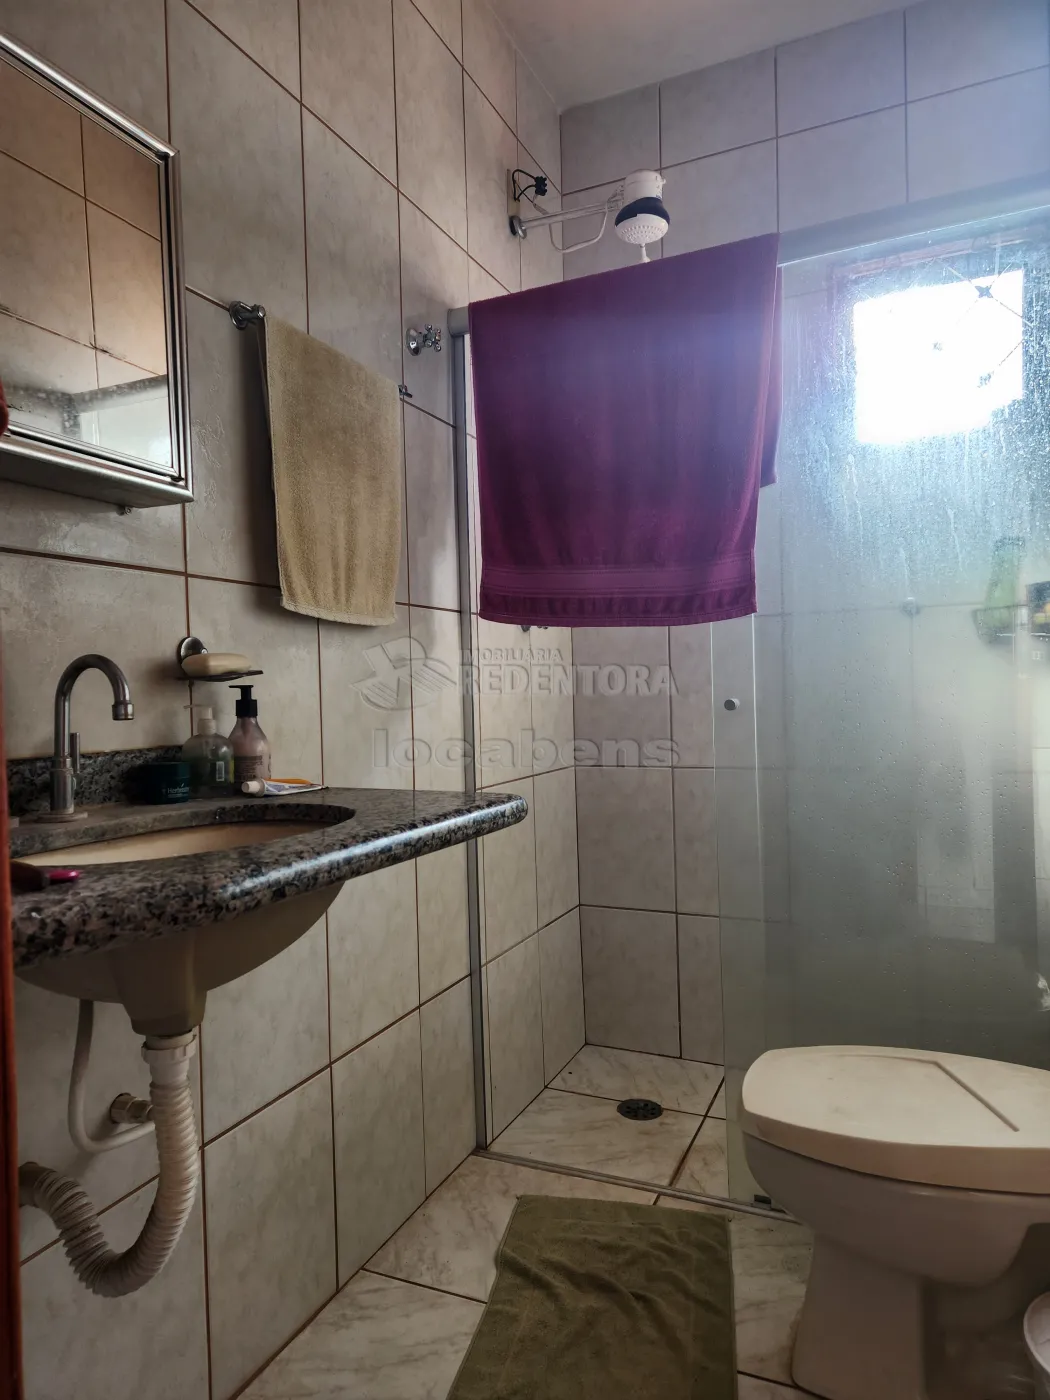 Comprar Casa / Sobrado em São José do Rio Preto R$ 450.000,00 - Foto 3